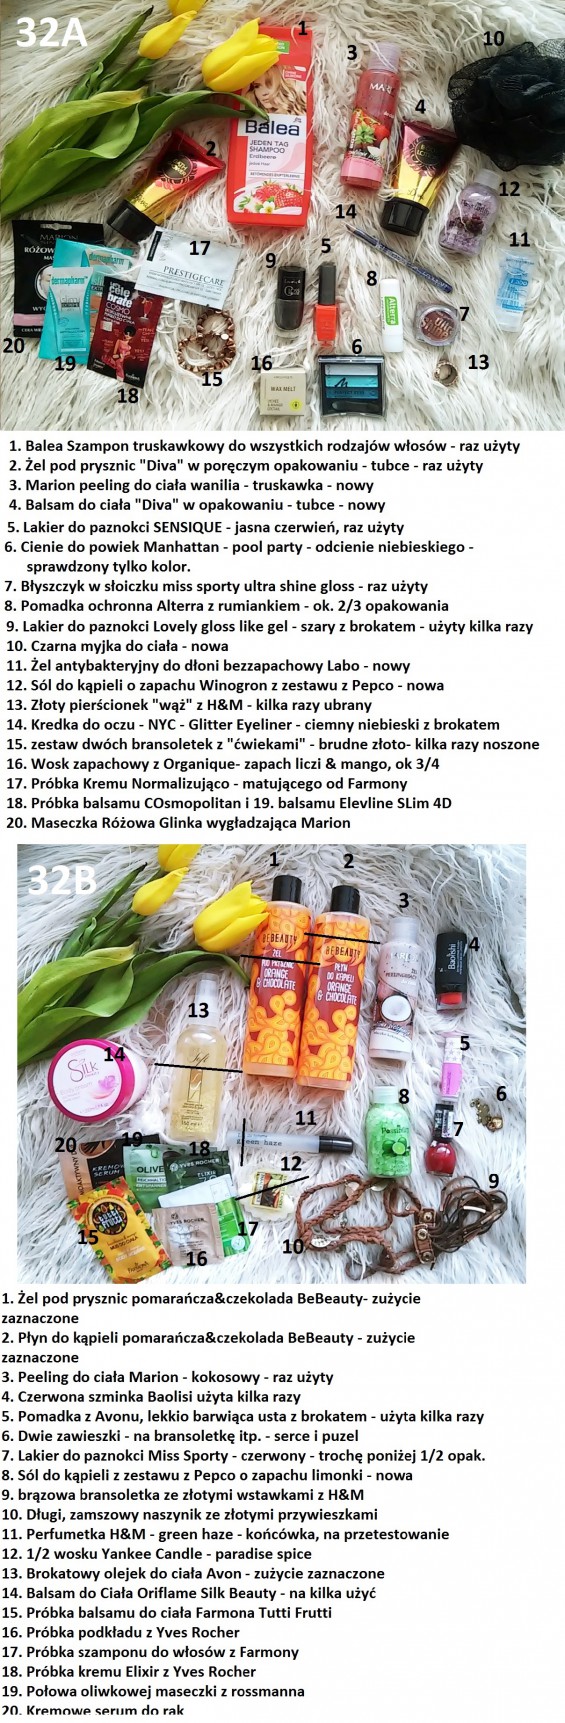 Wymiana kosmetyczna IV - EDYCJA JAJKOWA! (wyniki str. 10)